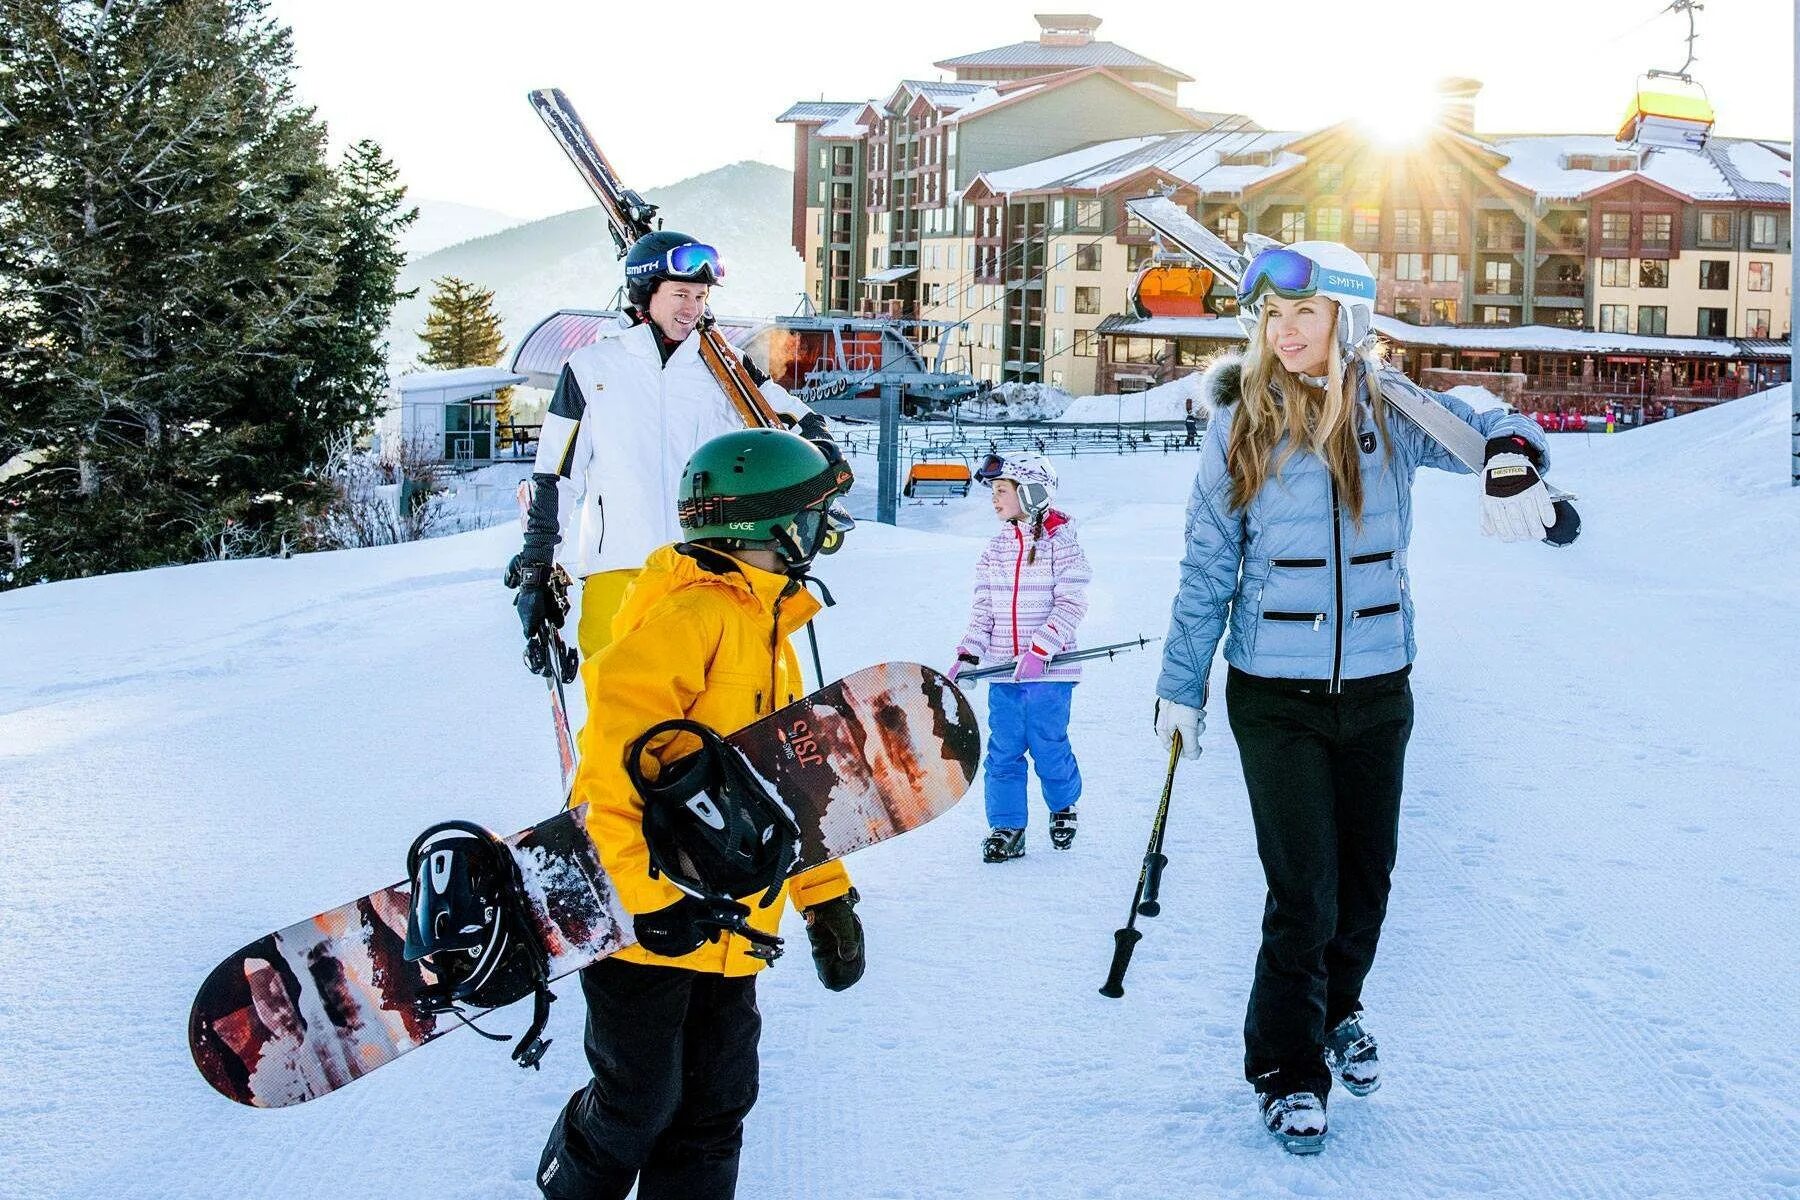 Покататься на горнолыжном курорте. Семья на горнолыжном курорте. Зимний отдых. Семья на сноубордах. Кататься на лыжах и сноуборде.